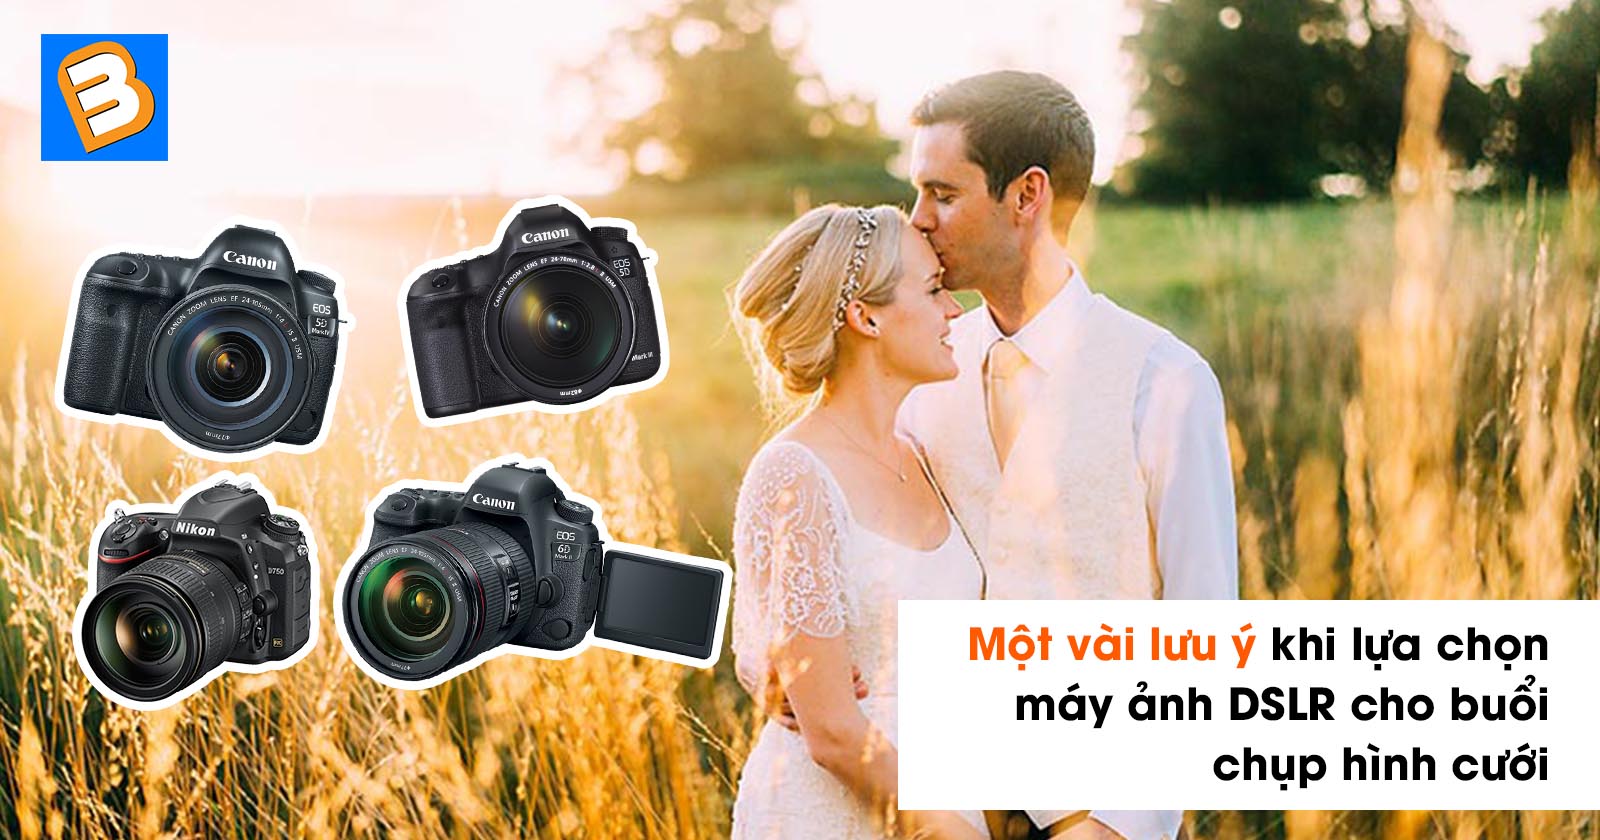 Máy ảnh DSLR: Bạn đang muốn sở hữu một chiếc máy ảnh chuyên nghiệp để chụp những bức ảnh đẹp và sắc nét nhất? Máy ảnh DSLR chính là giải pháp tuyệt vời dành cho bạn! Hãy cùng đến với hình ảnh liên quan để tìm hiểu thêm về loại máy ảnh này nhé!